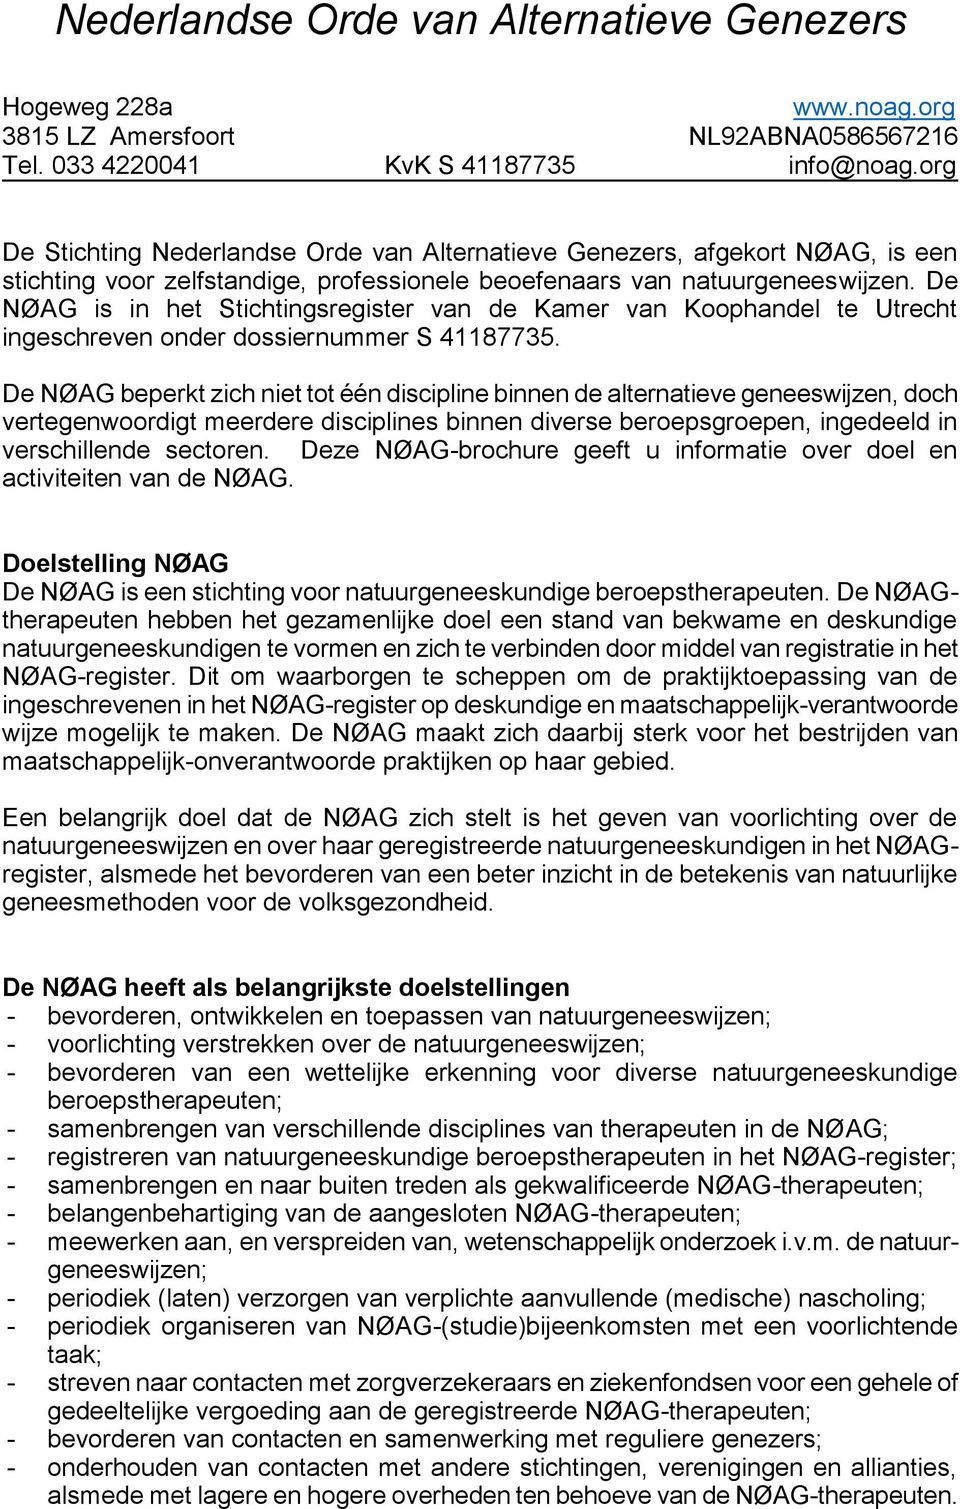 De NØAG is in het Stichtingsregister van de Kamer van Koophandel te Utrecht ingeschreven onder dossiernummer S 41187735.